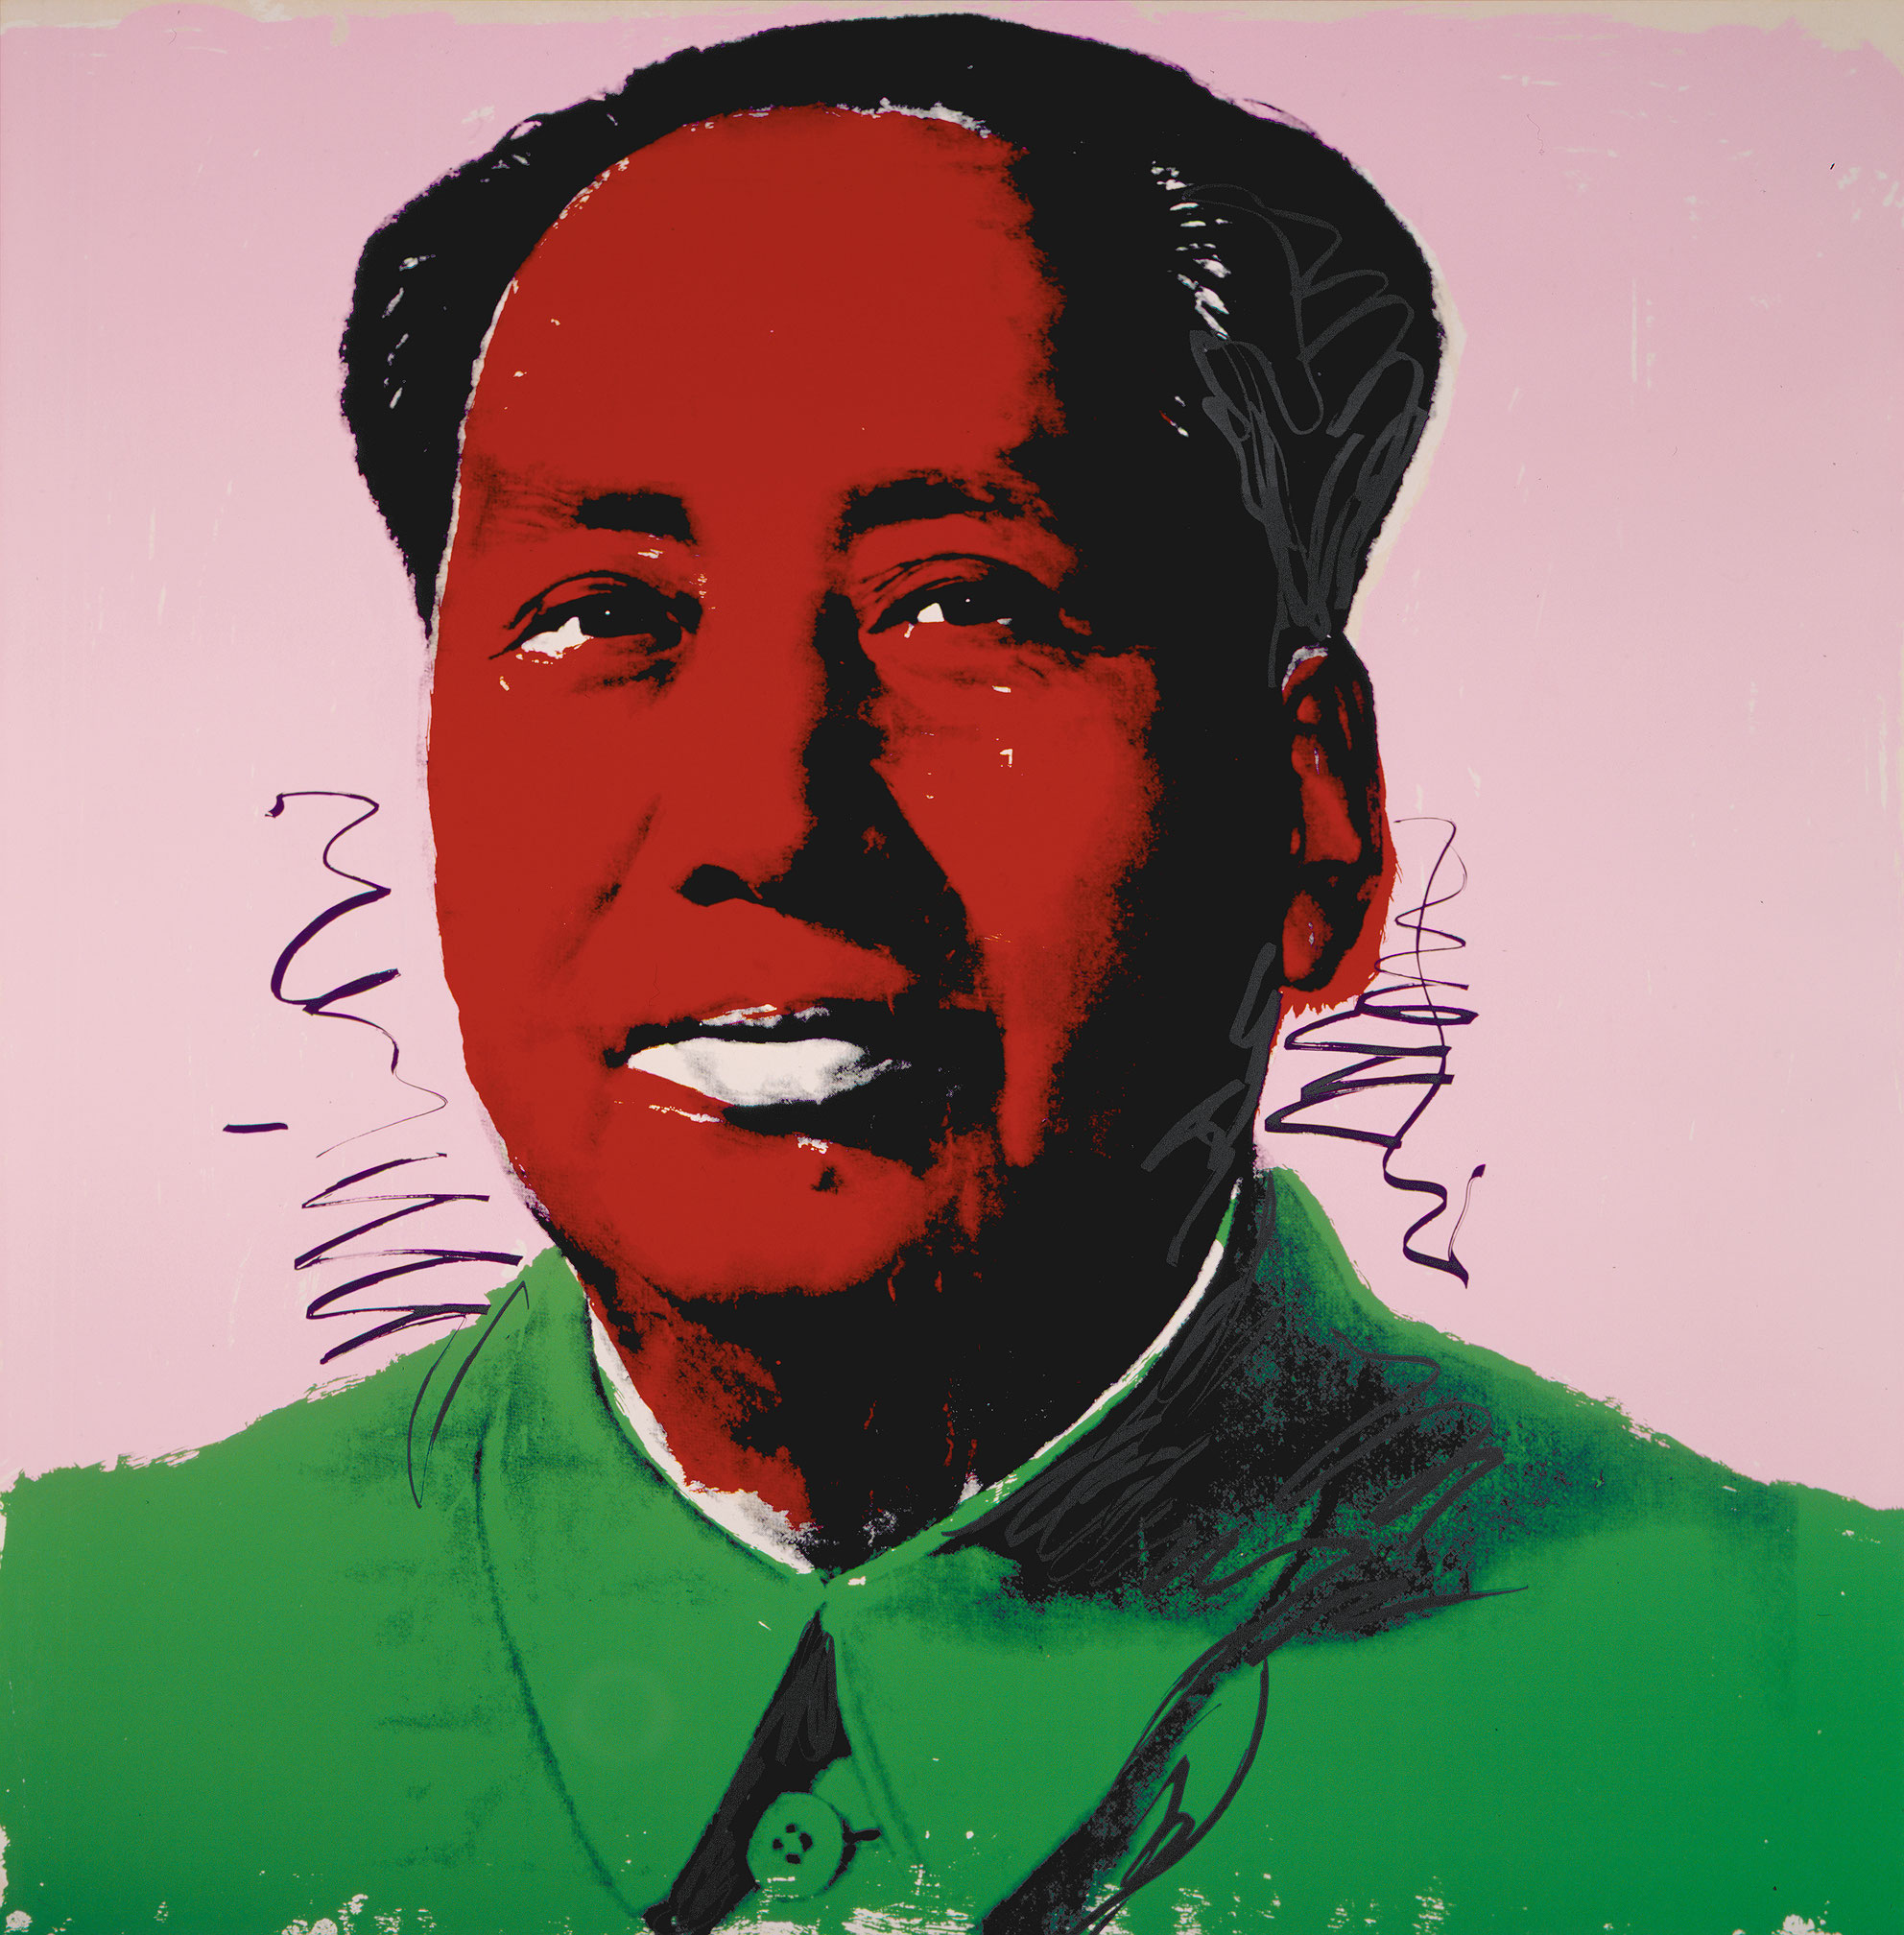 Mao Tsé-tung, 1972, 4 silkscreen prints, 129/250 (2), 66/250 (2).